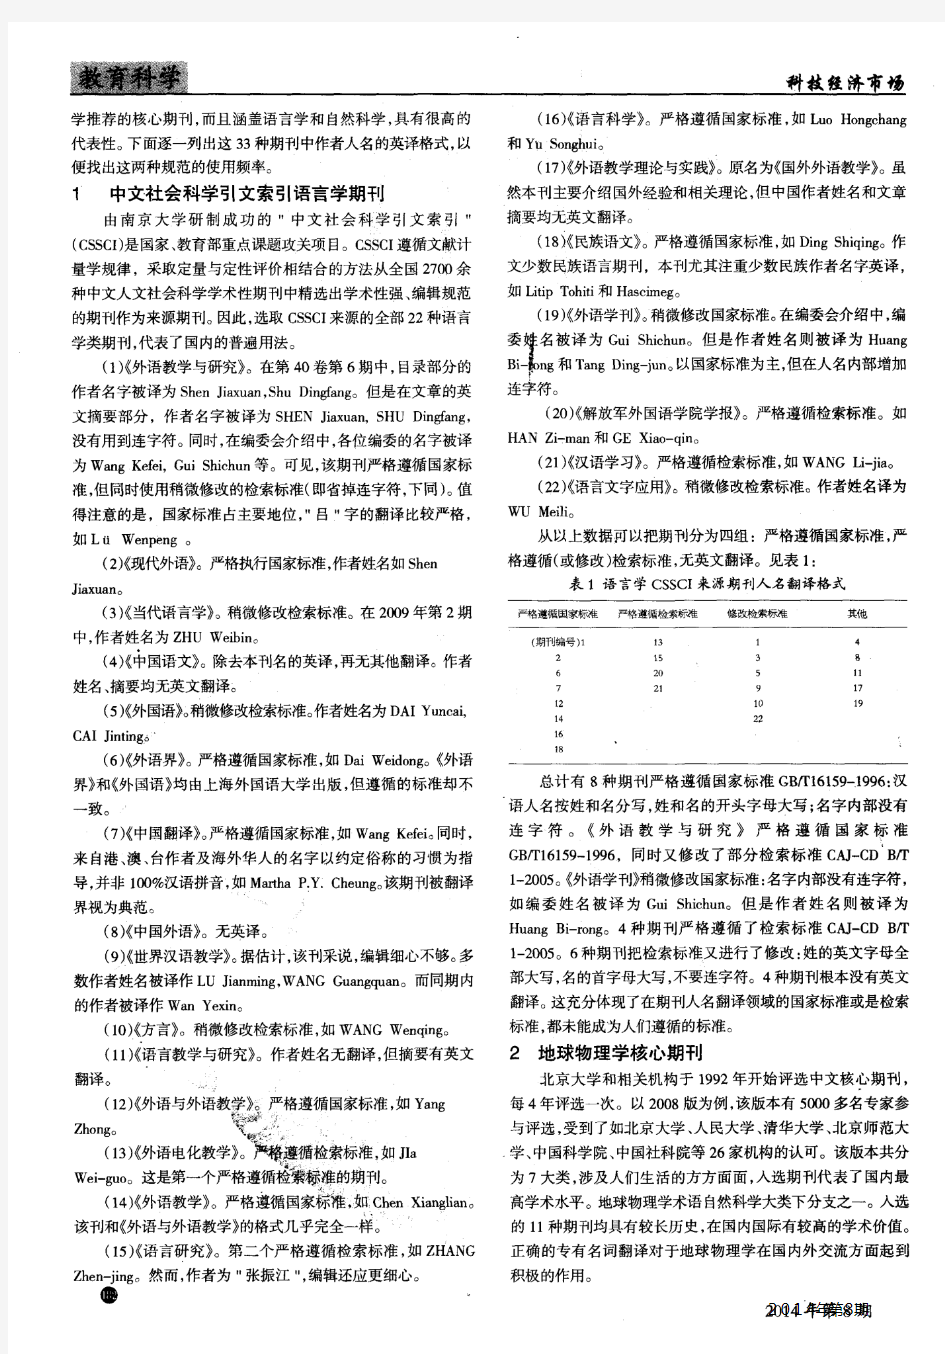 中文学术文章英文摘要中人名的翻译规范